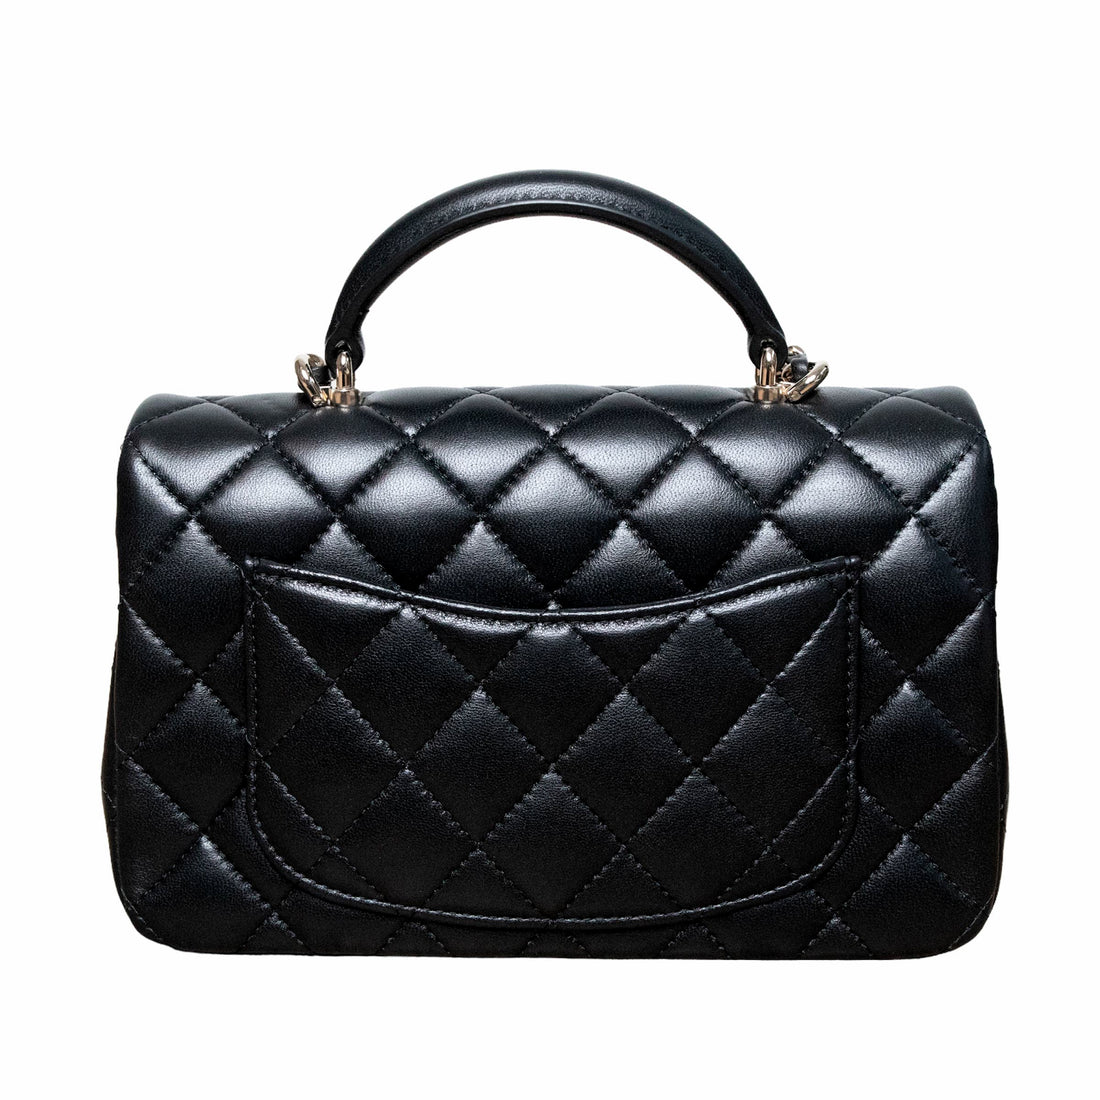 Chanel Klassische Mini Flapbag Rabat mit Griff und CC-Schließe